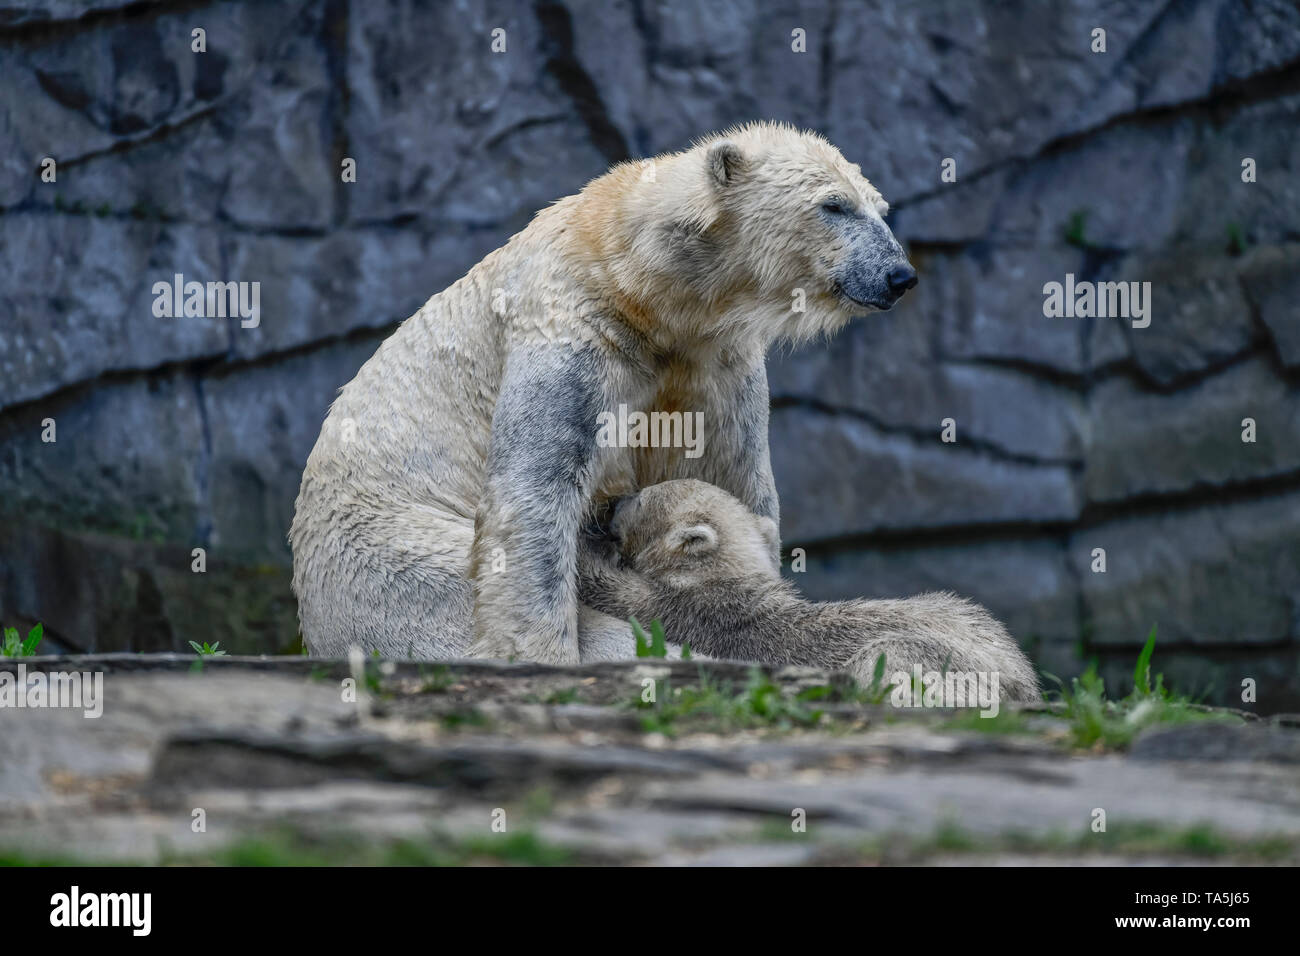 L'ours polaire Tonja allaite son enfant dans l'Hertha polar bear's arrangement, parc animalier, Friedrich's Field, la montagne lumineuse, Berlin, Allemagne, Eisbärin T Banque D'Images